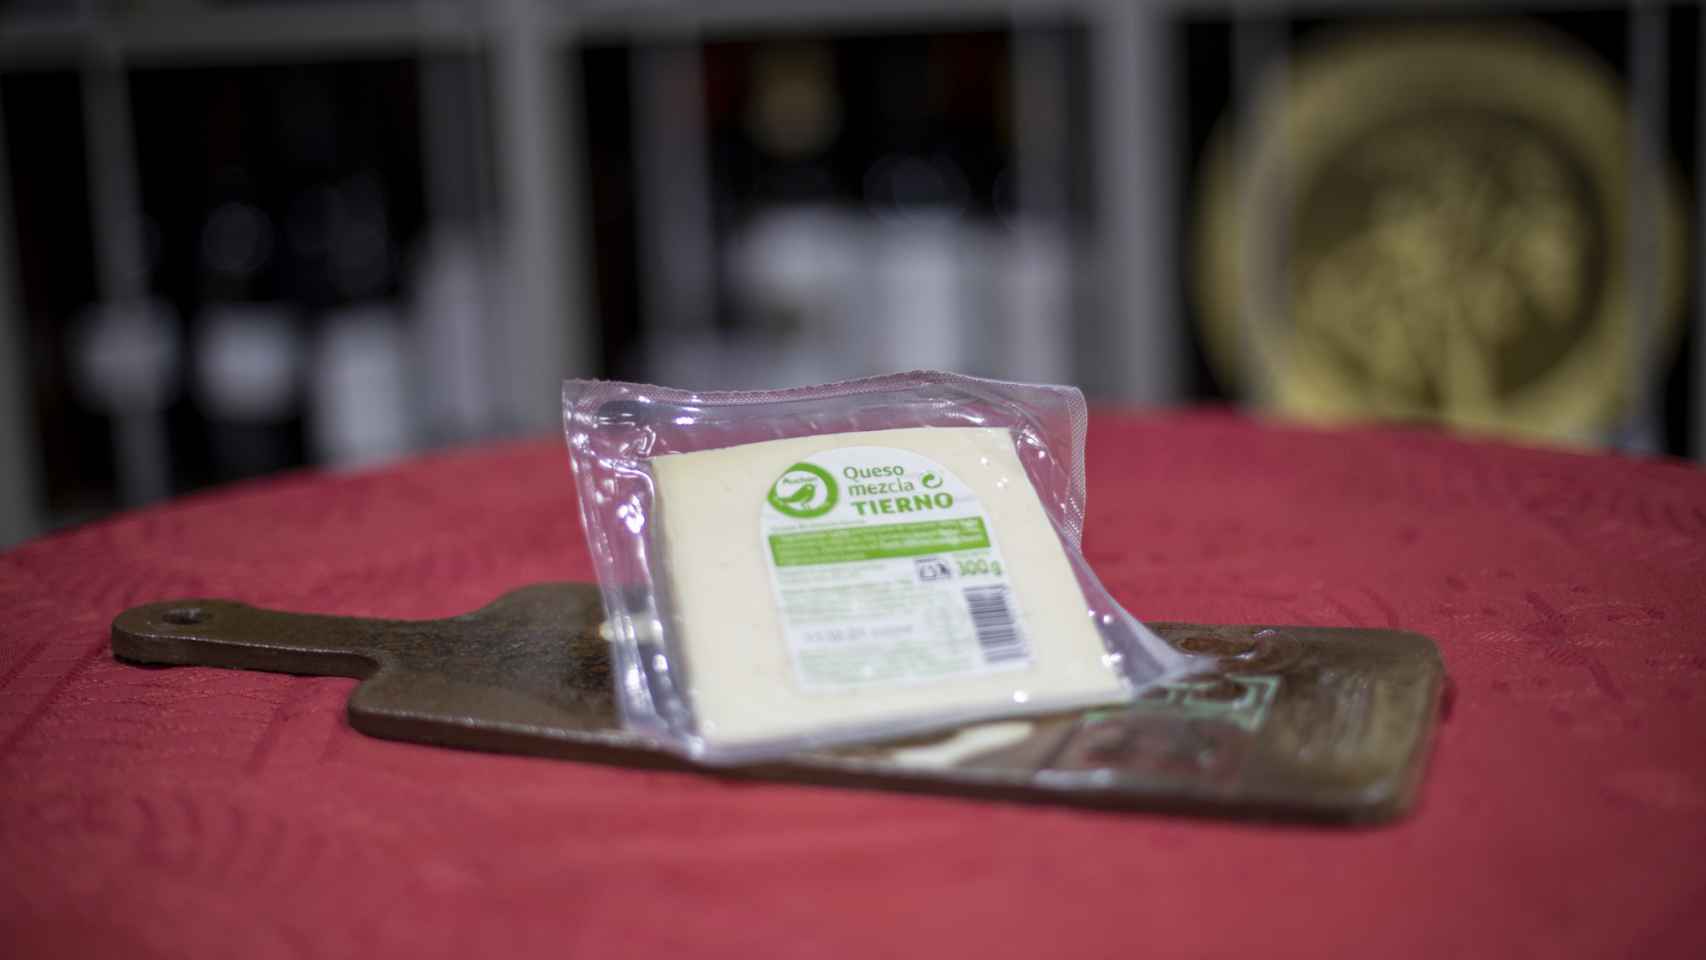 La cuña de queso tierno de Auchan, la marca blanca de Alcampo.